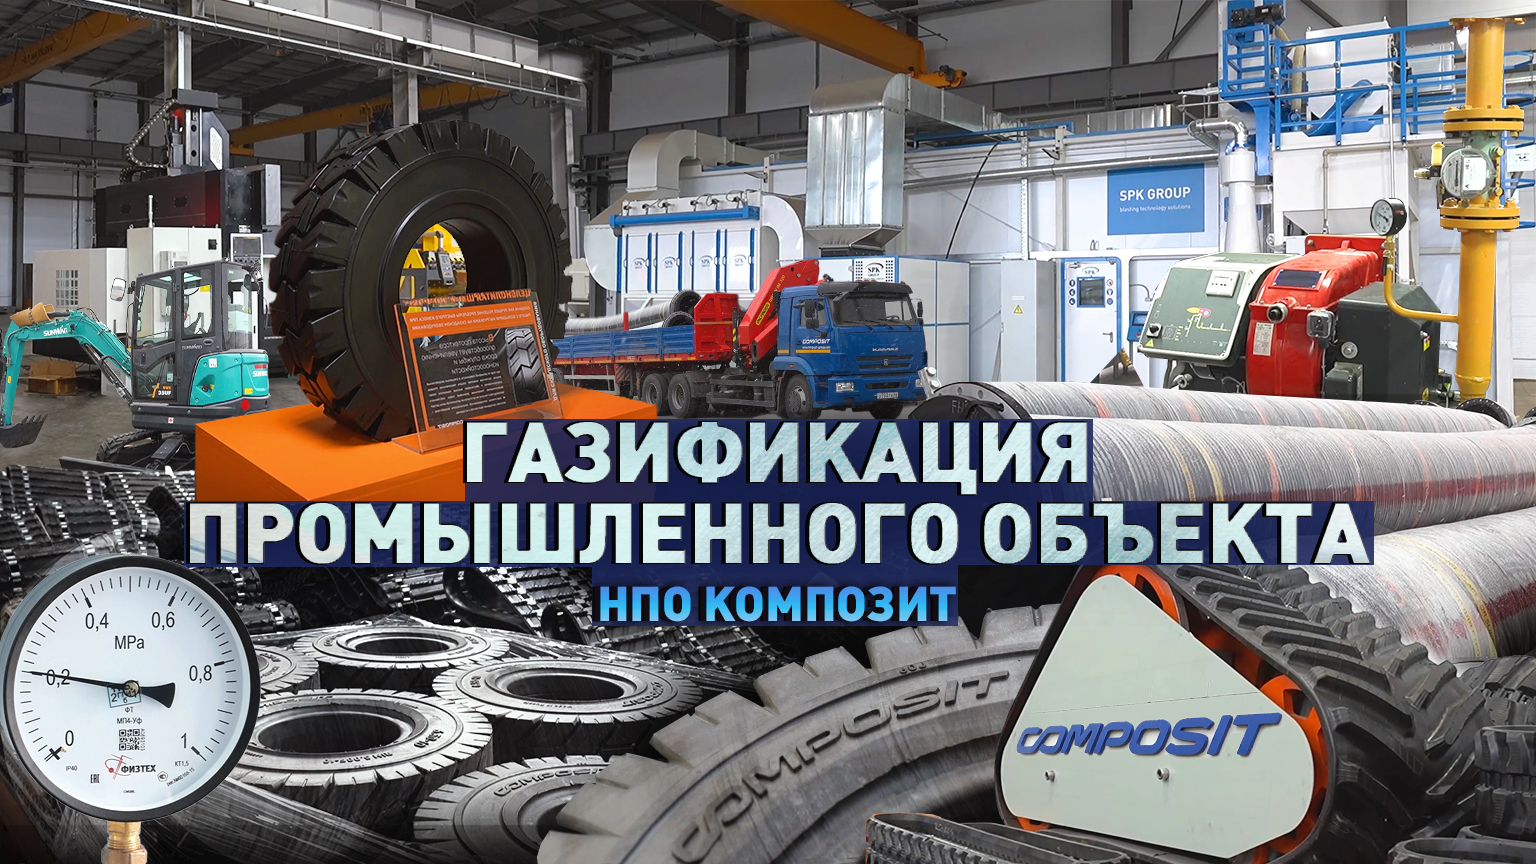 Металл и резина. НПО «Композит» — крупнейший в России производитель резиновых трубопроводов